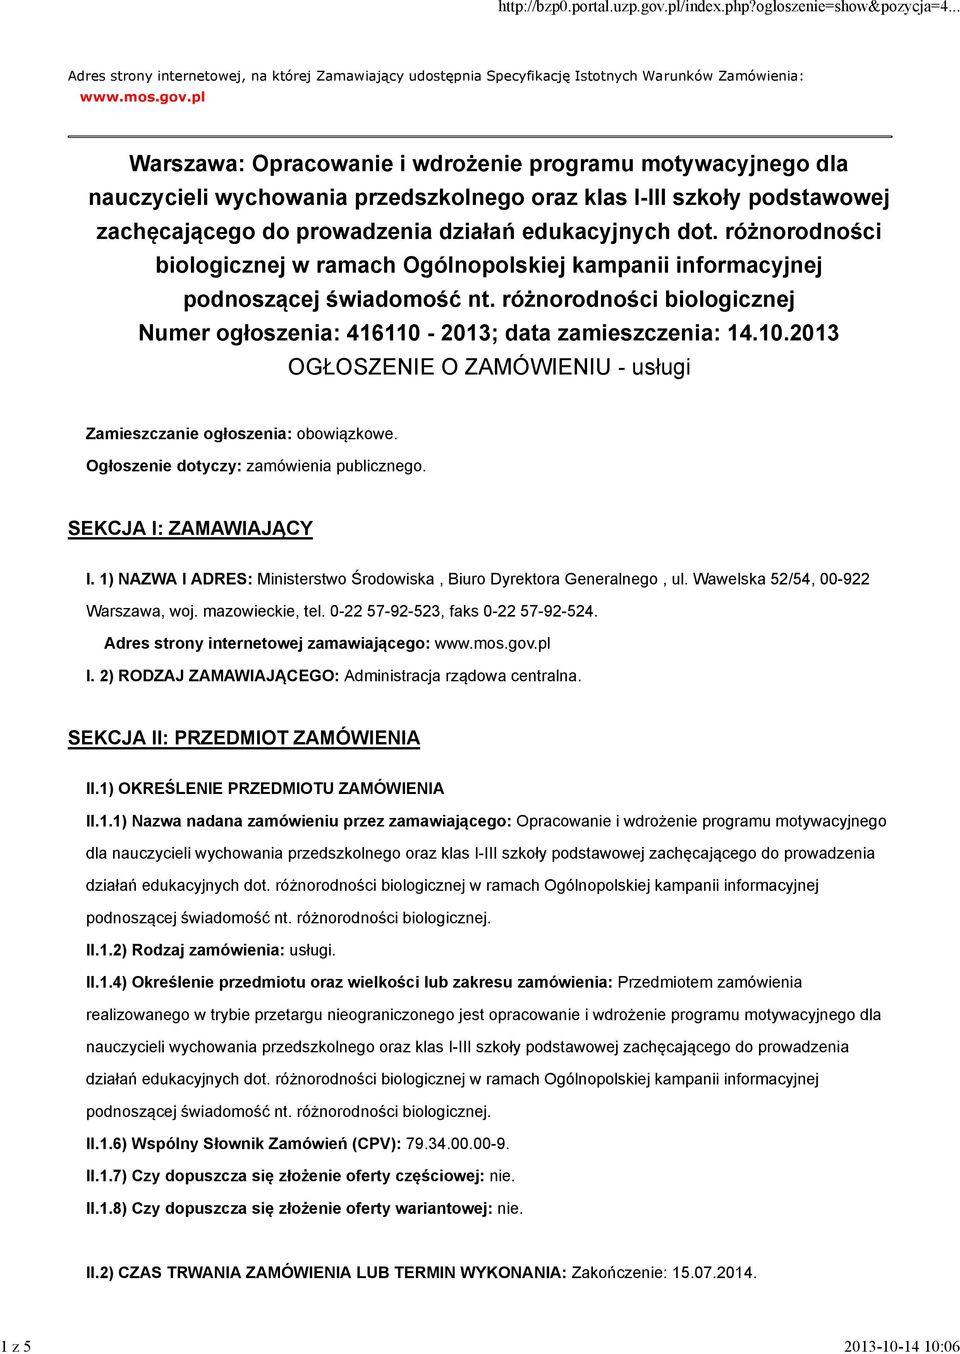 różnorodności biologicznej w ramach Ogólnopolskiej kampanii informacyjnej podnoszącej świadomość nt. różnorodności biologicznej Numer ogłoszenia: 416110-